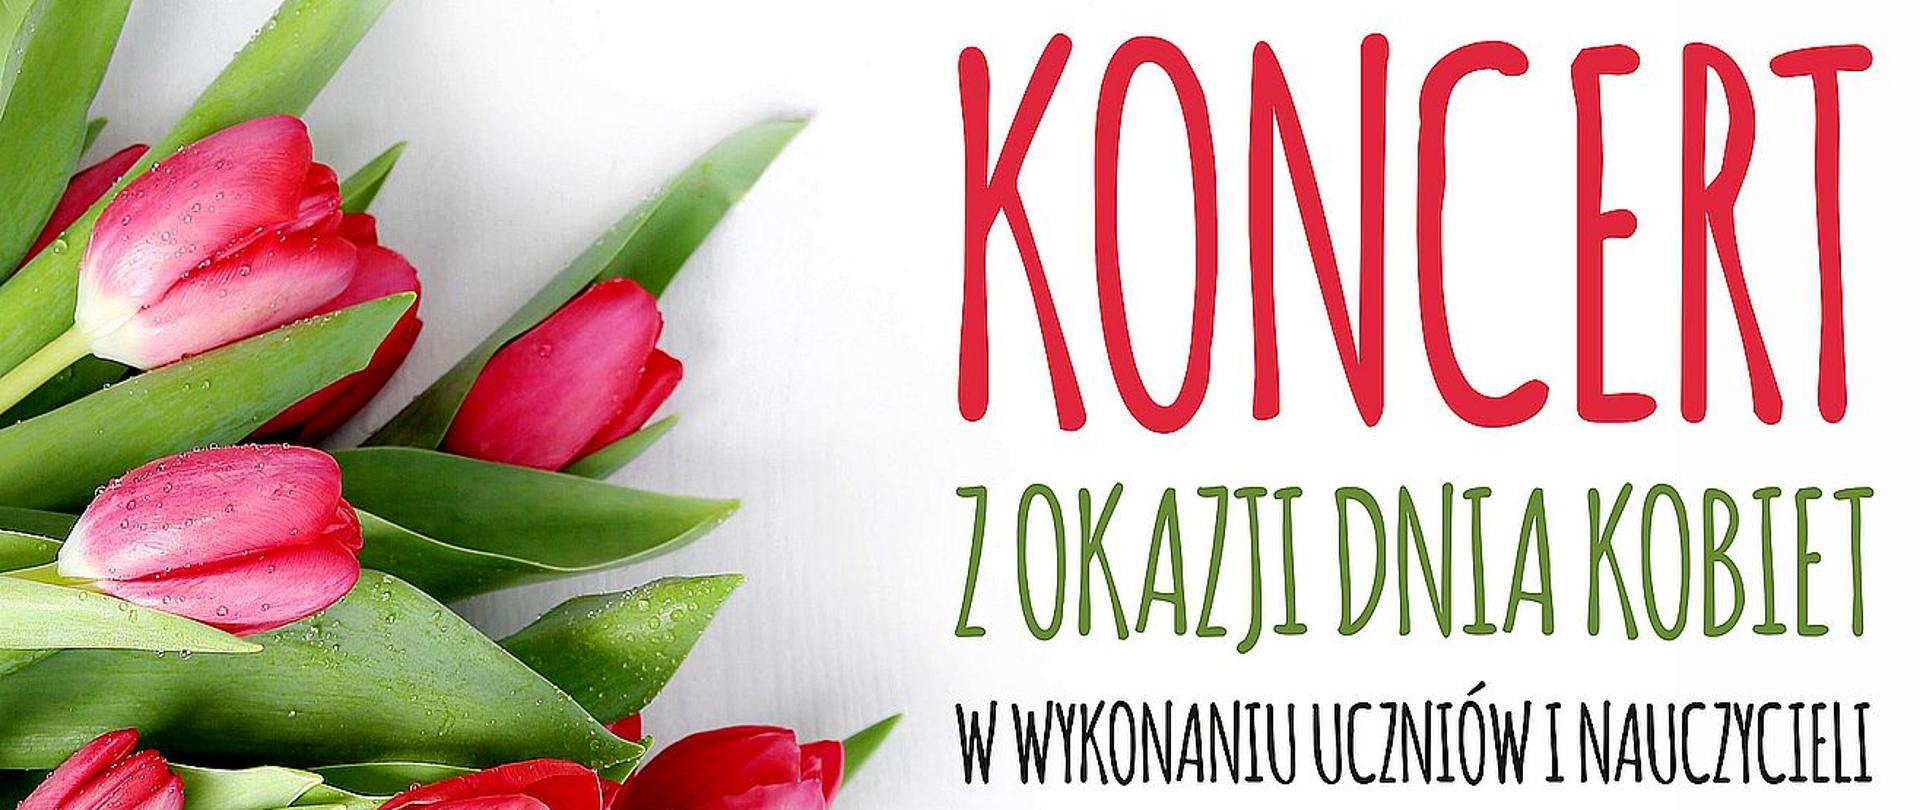 Plakat informujący o koncercie z okazji Dnia Kobiet prezentuje czerwone tulipany na białym tle.